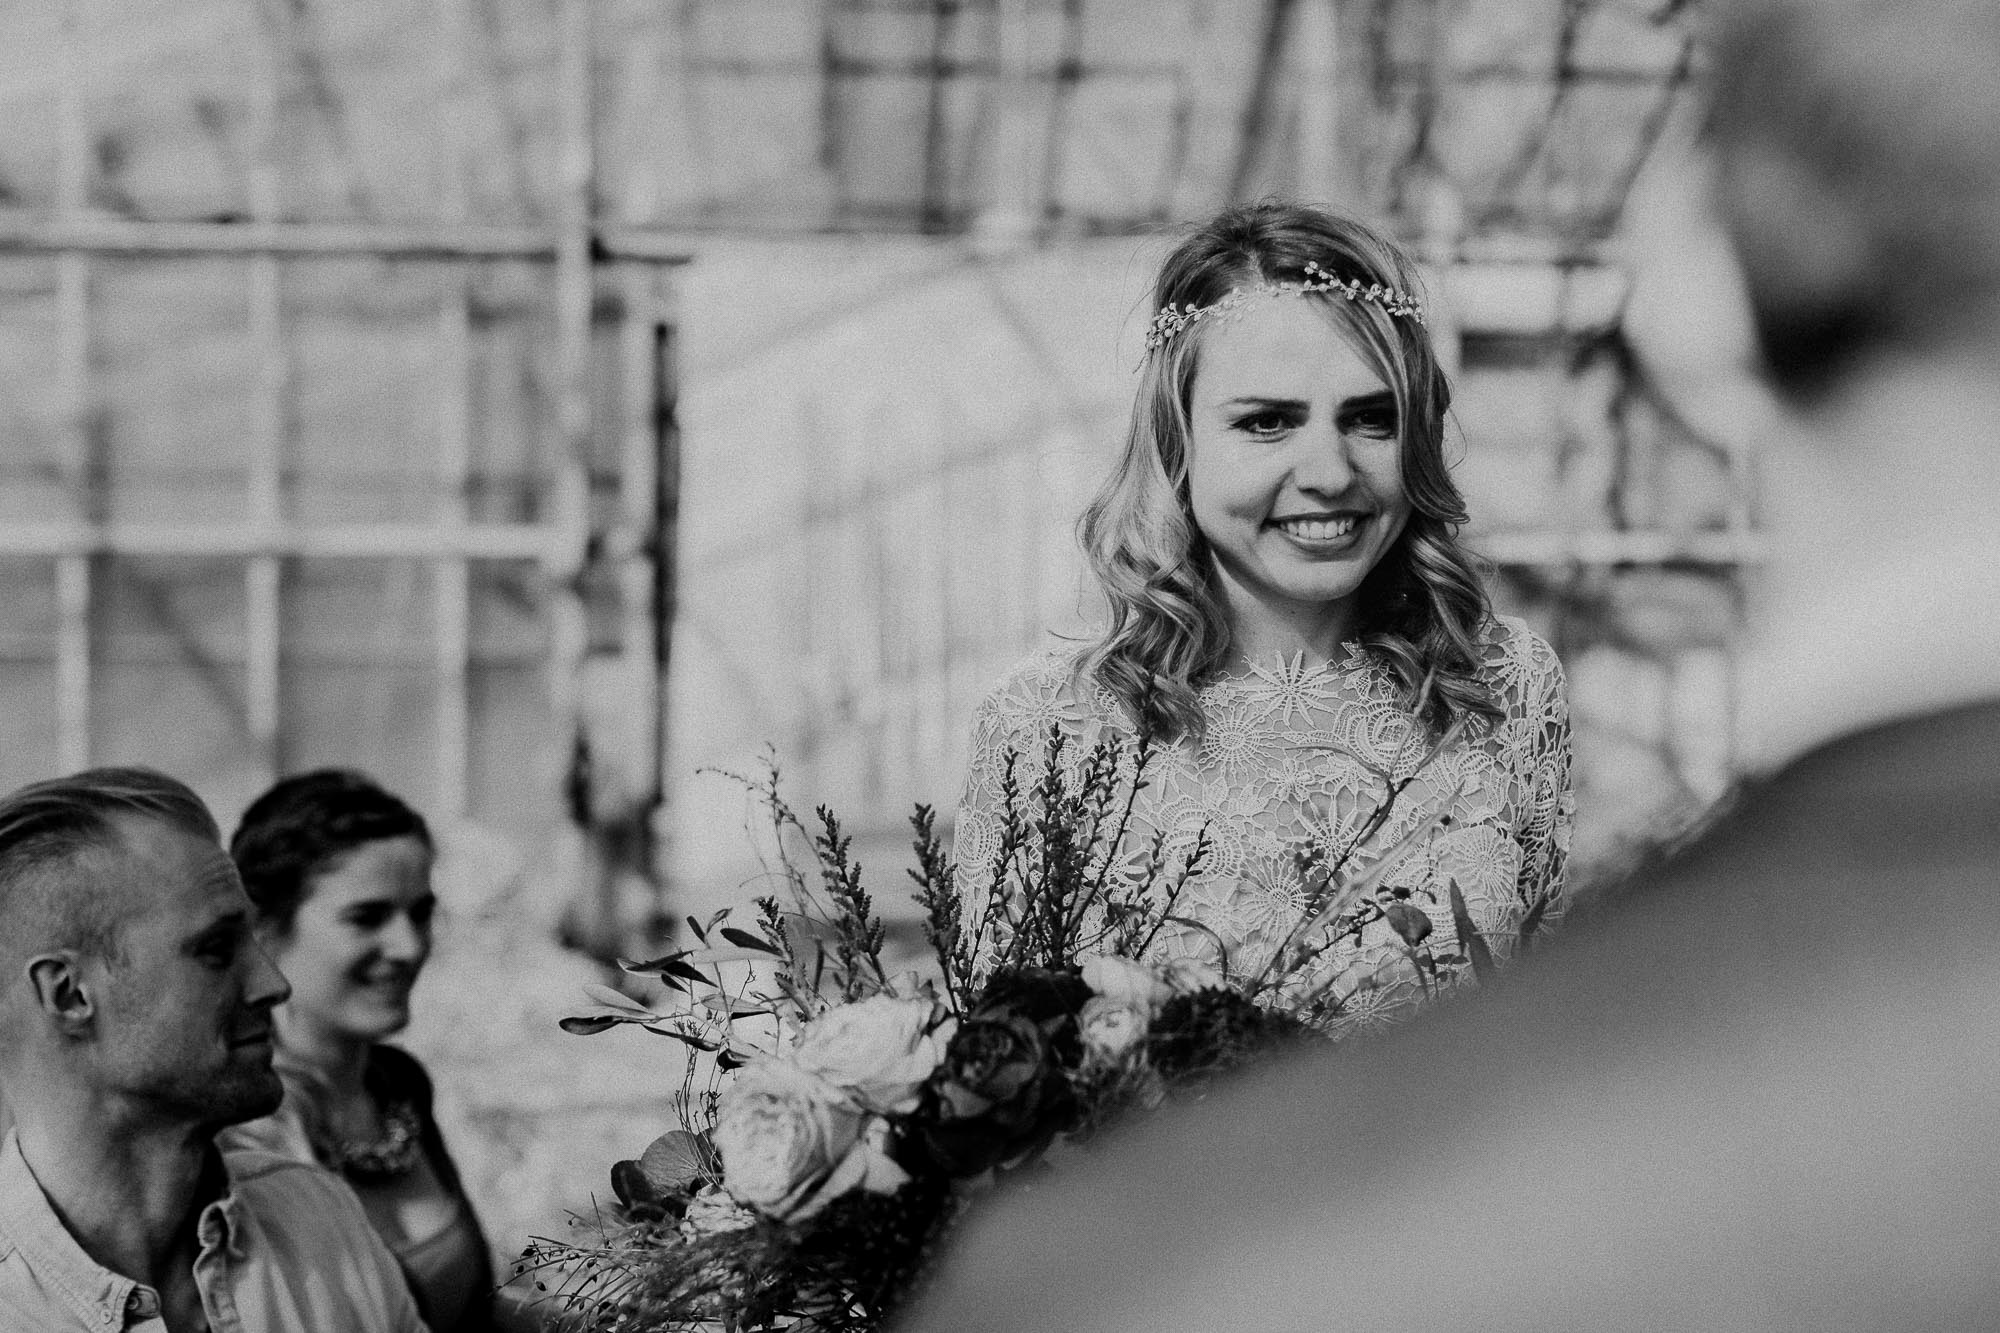 Hochzeitsreportage im Boho Style. Aufgenommen von den Hochzeitsfotografen Tom und Lia aus Rostock.